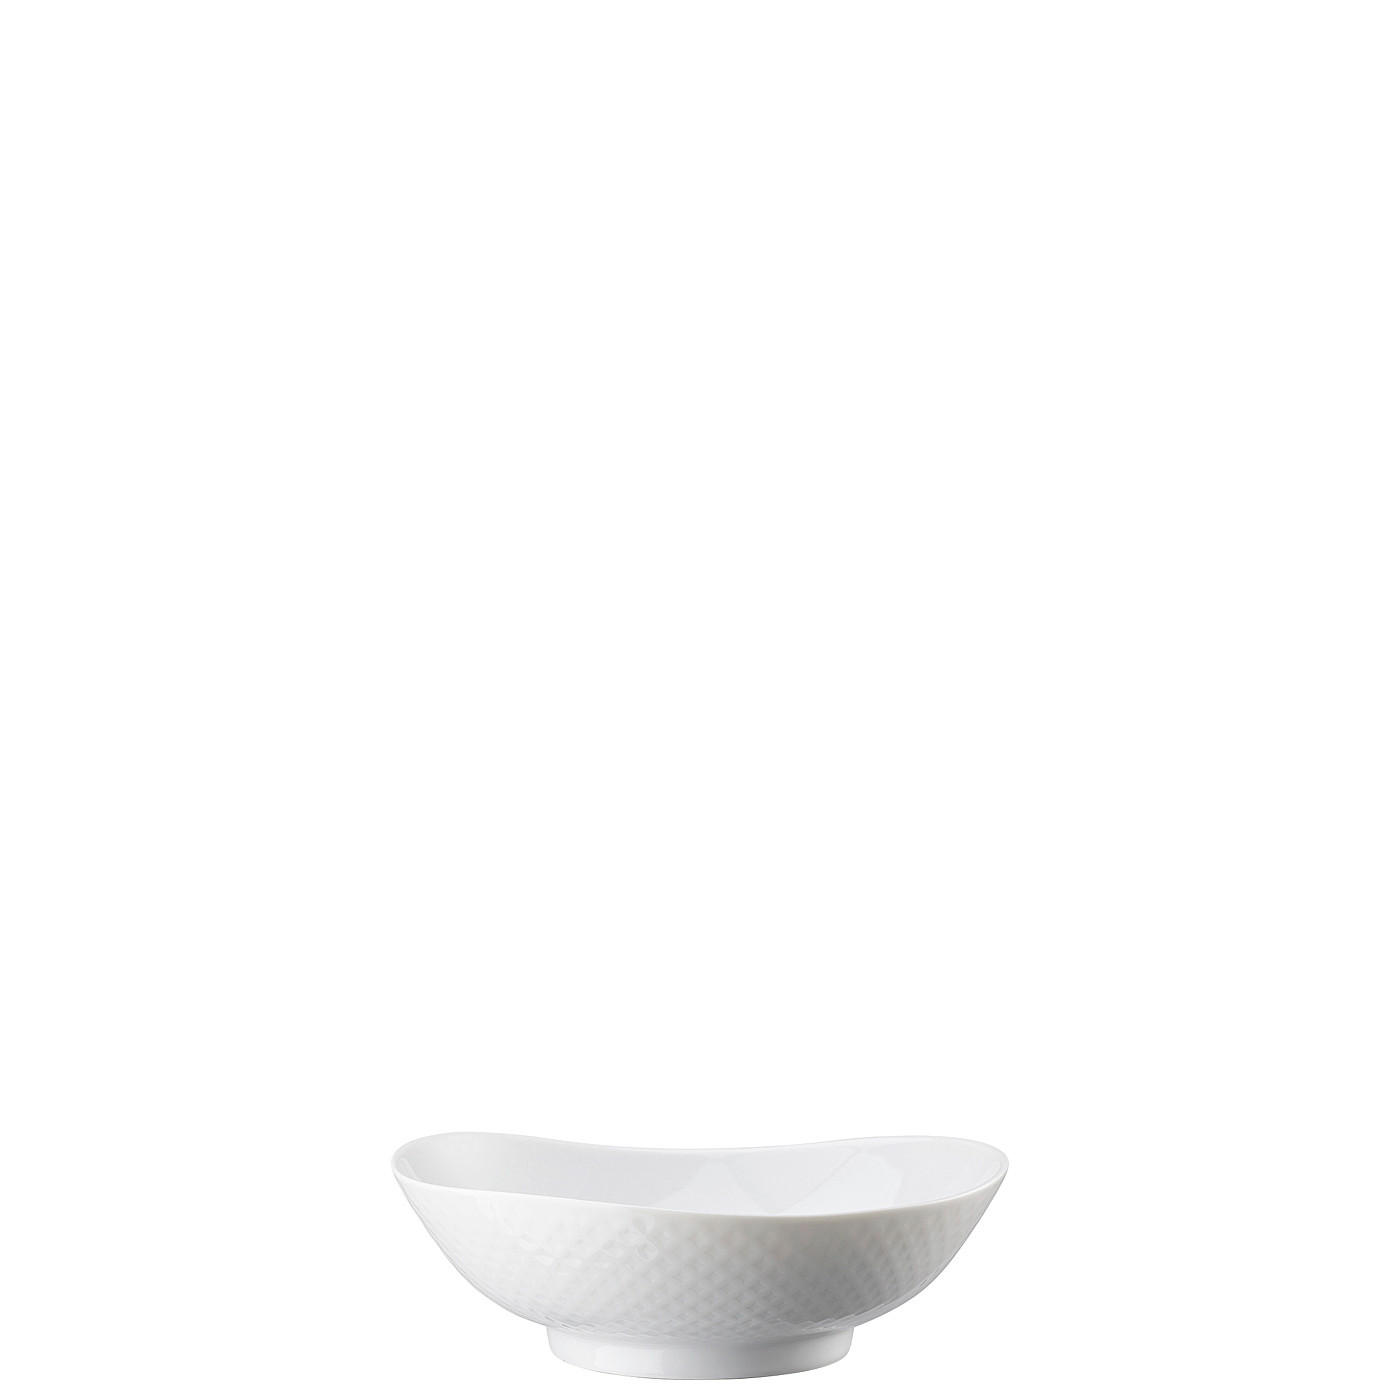 SCHALE Junto Weiss 15/14,5/5 cm  - Weiß, LIFESTYLE, Keramik (15/14,5/5cm) - Rosenthal